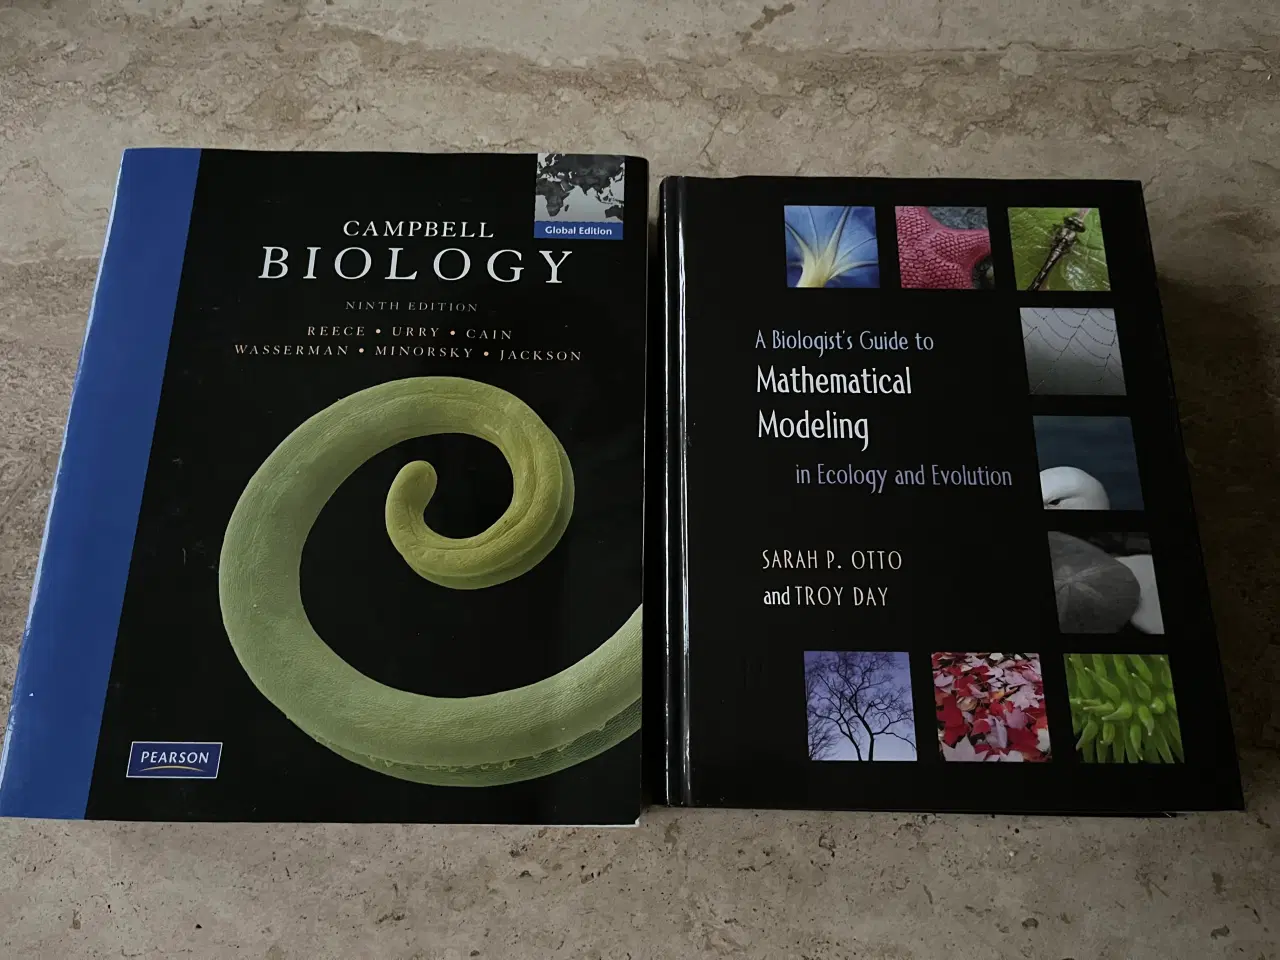 Billede 1 - Bøger til biologistudiet